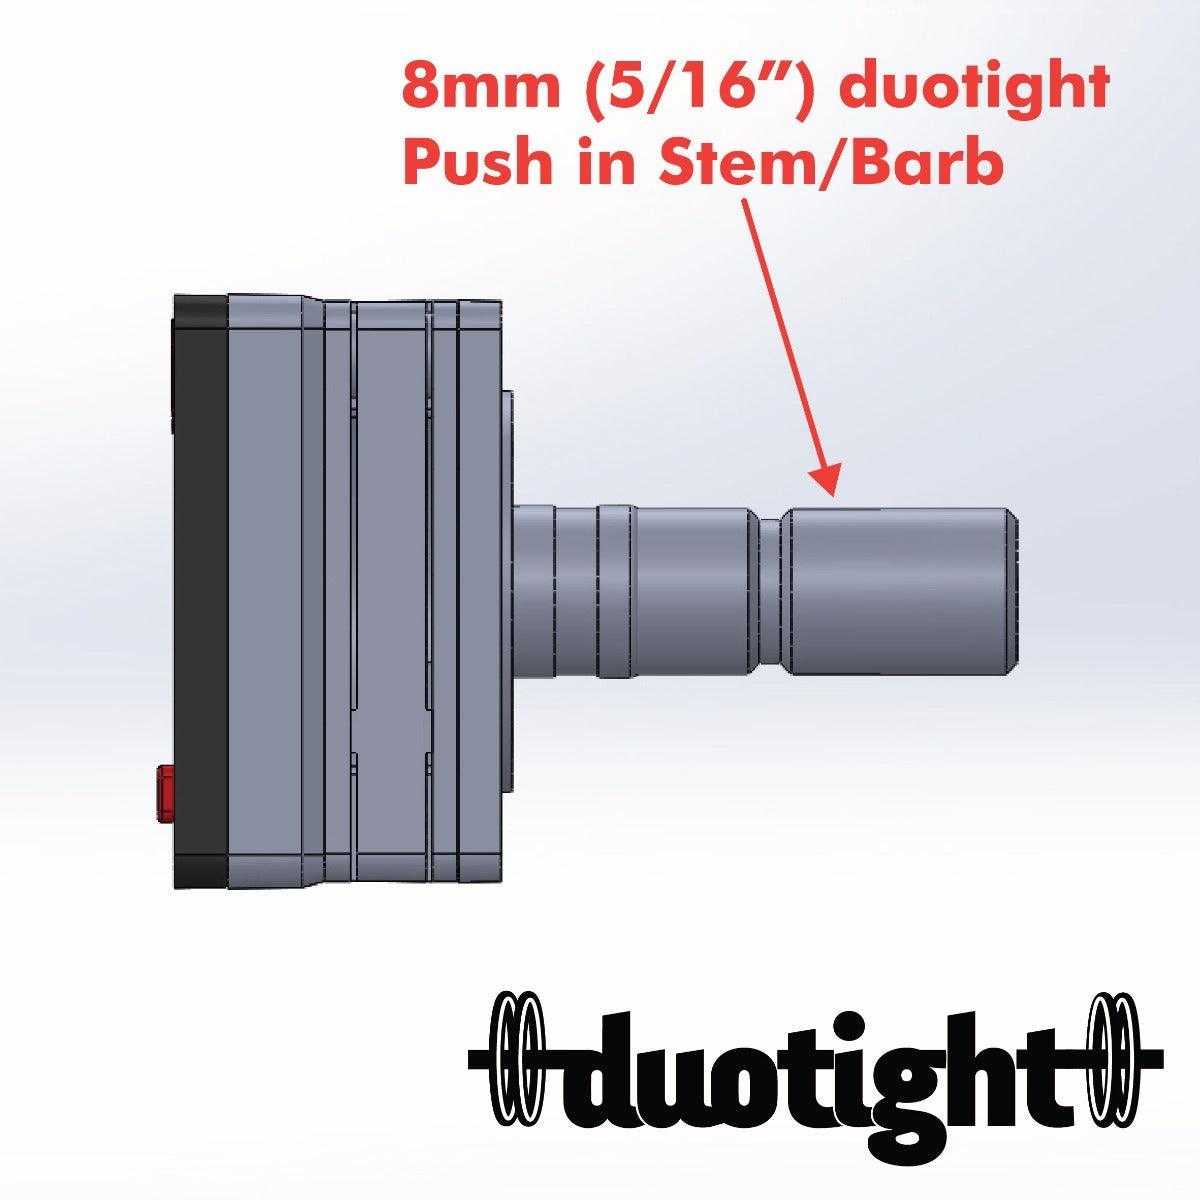 8mm (5/16) Male duotight x Mini Digital Gauge 27mm x 27mm x 8mm - 0-100psi - KegLand